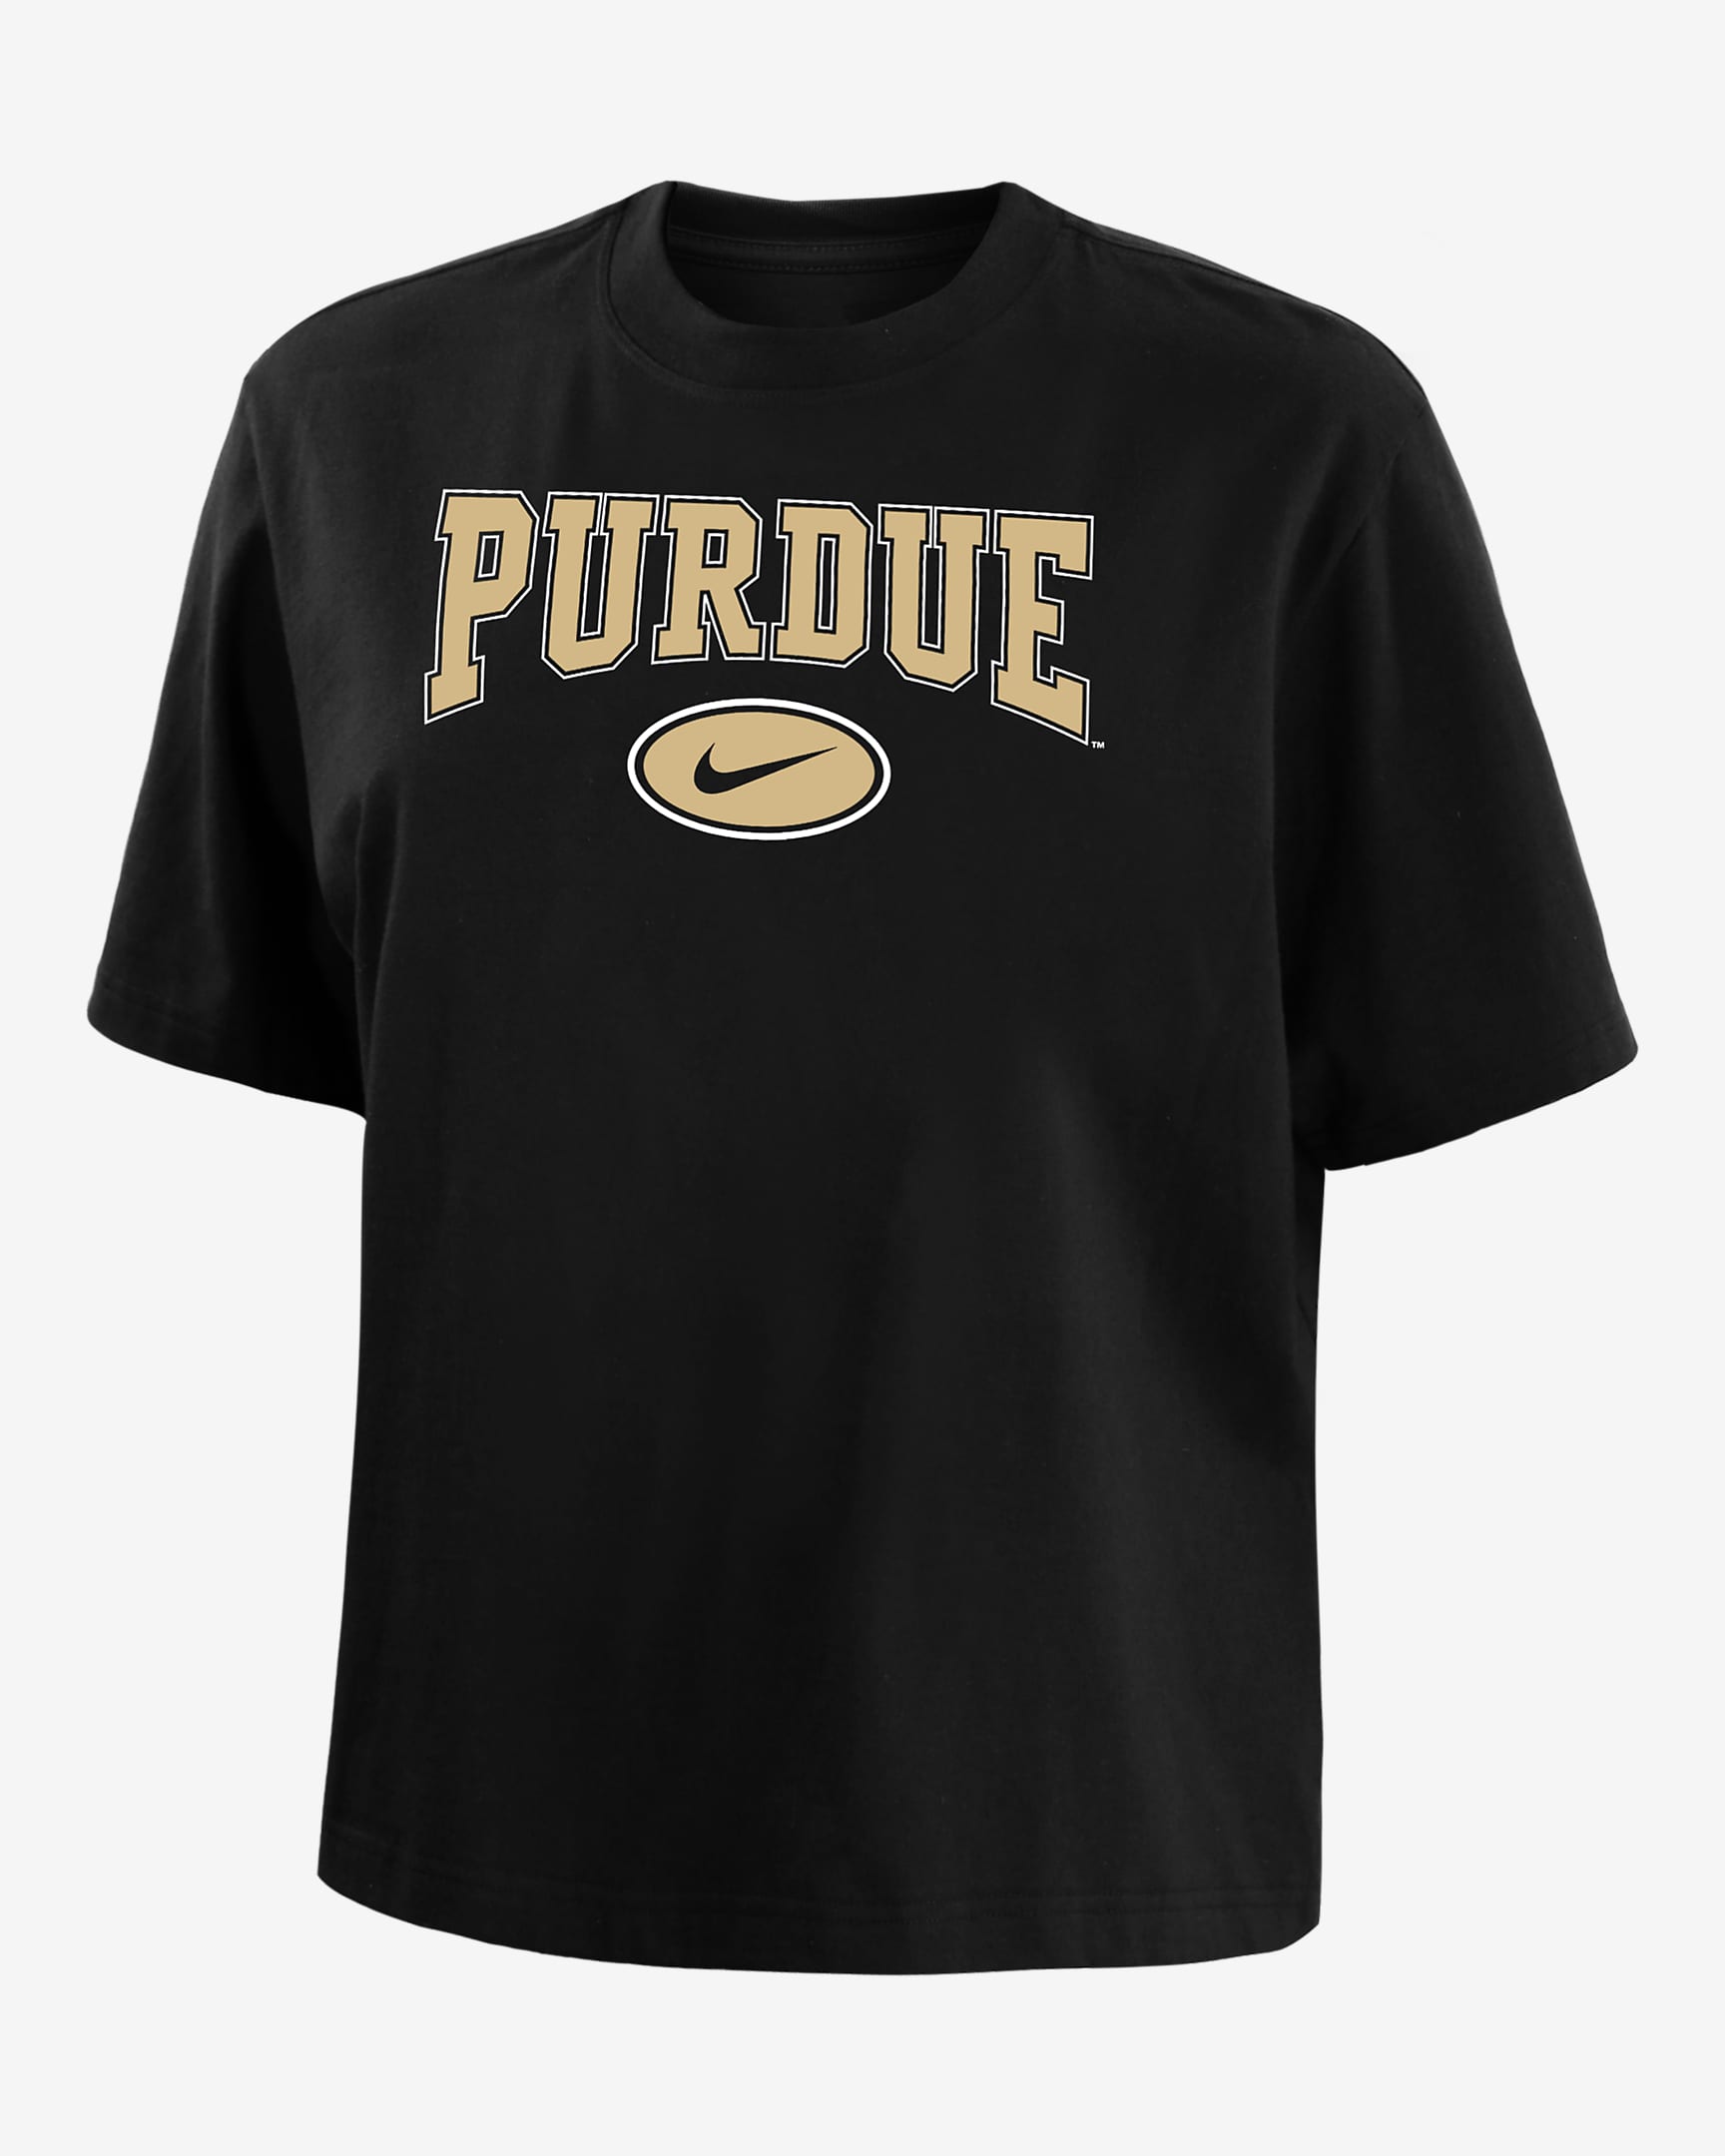 Purdue Women's Nike College Boxy T-Shirt. Nike.com